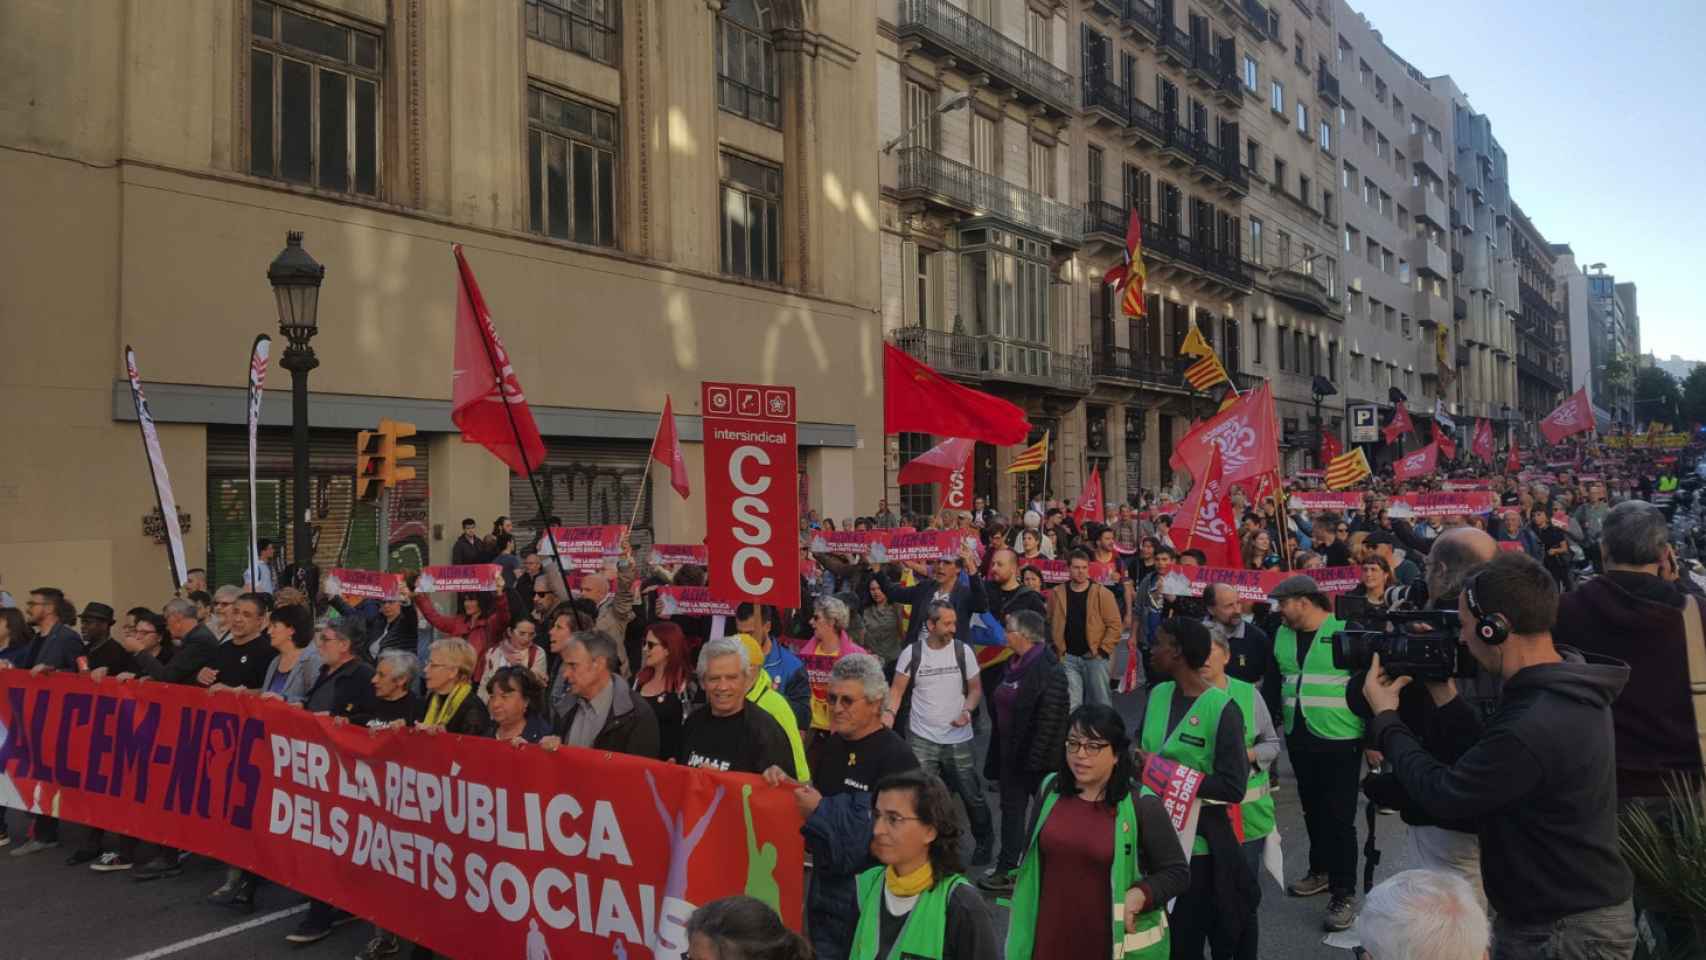 El independentismo dice que los derechos sociales solo se darán con la república catalana